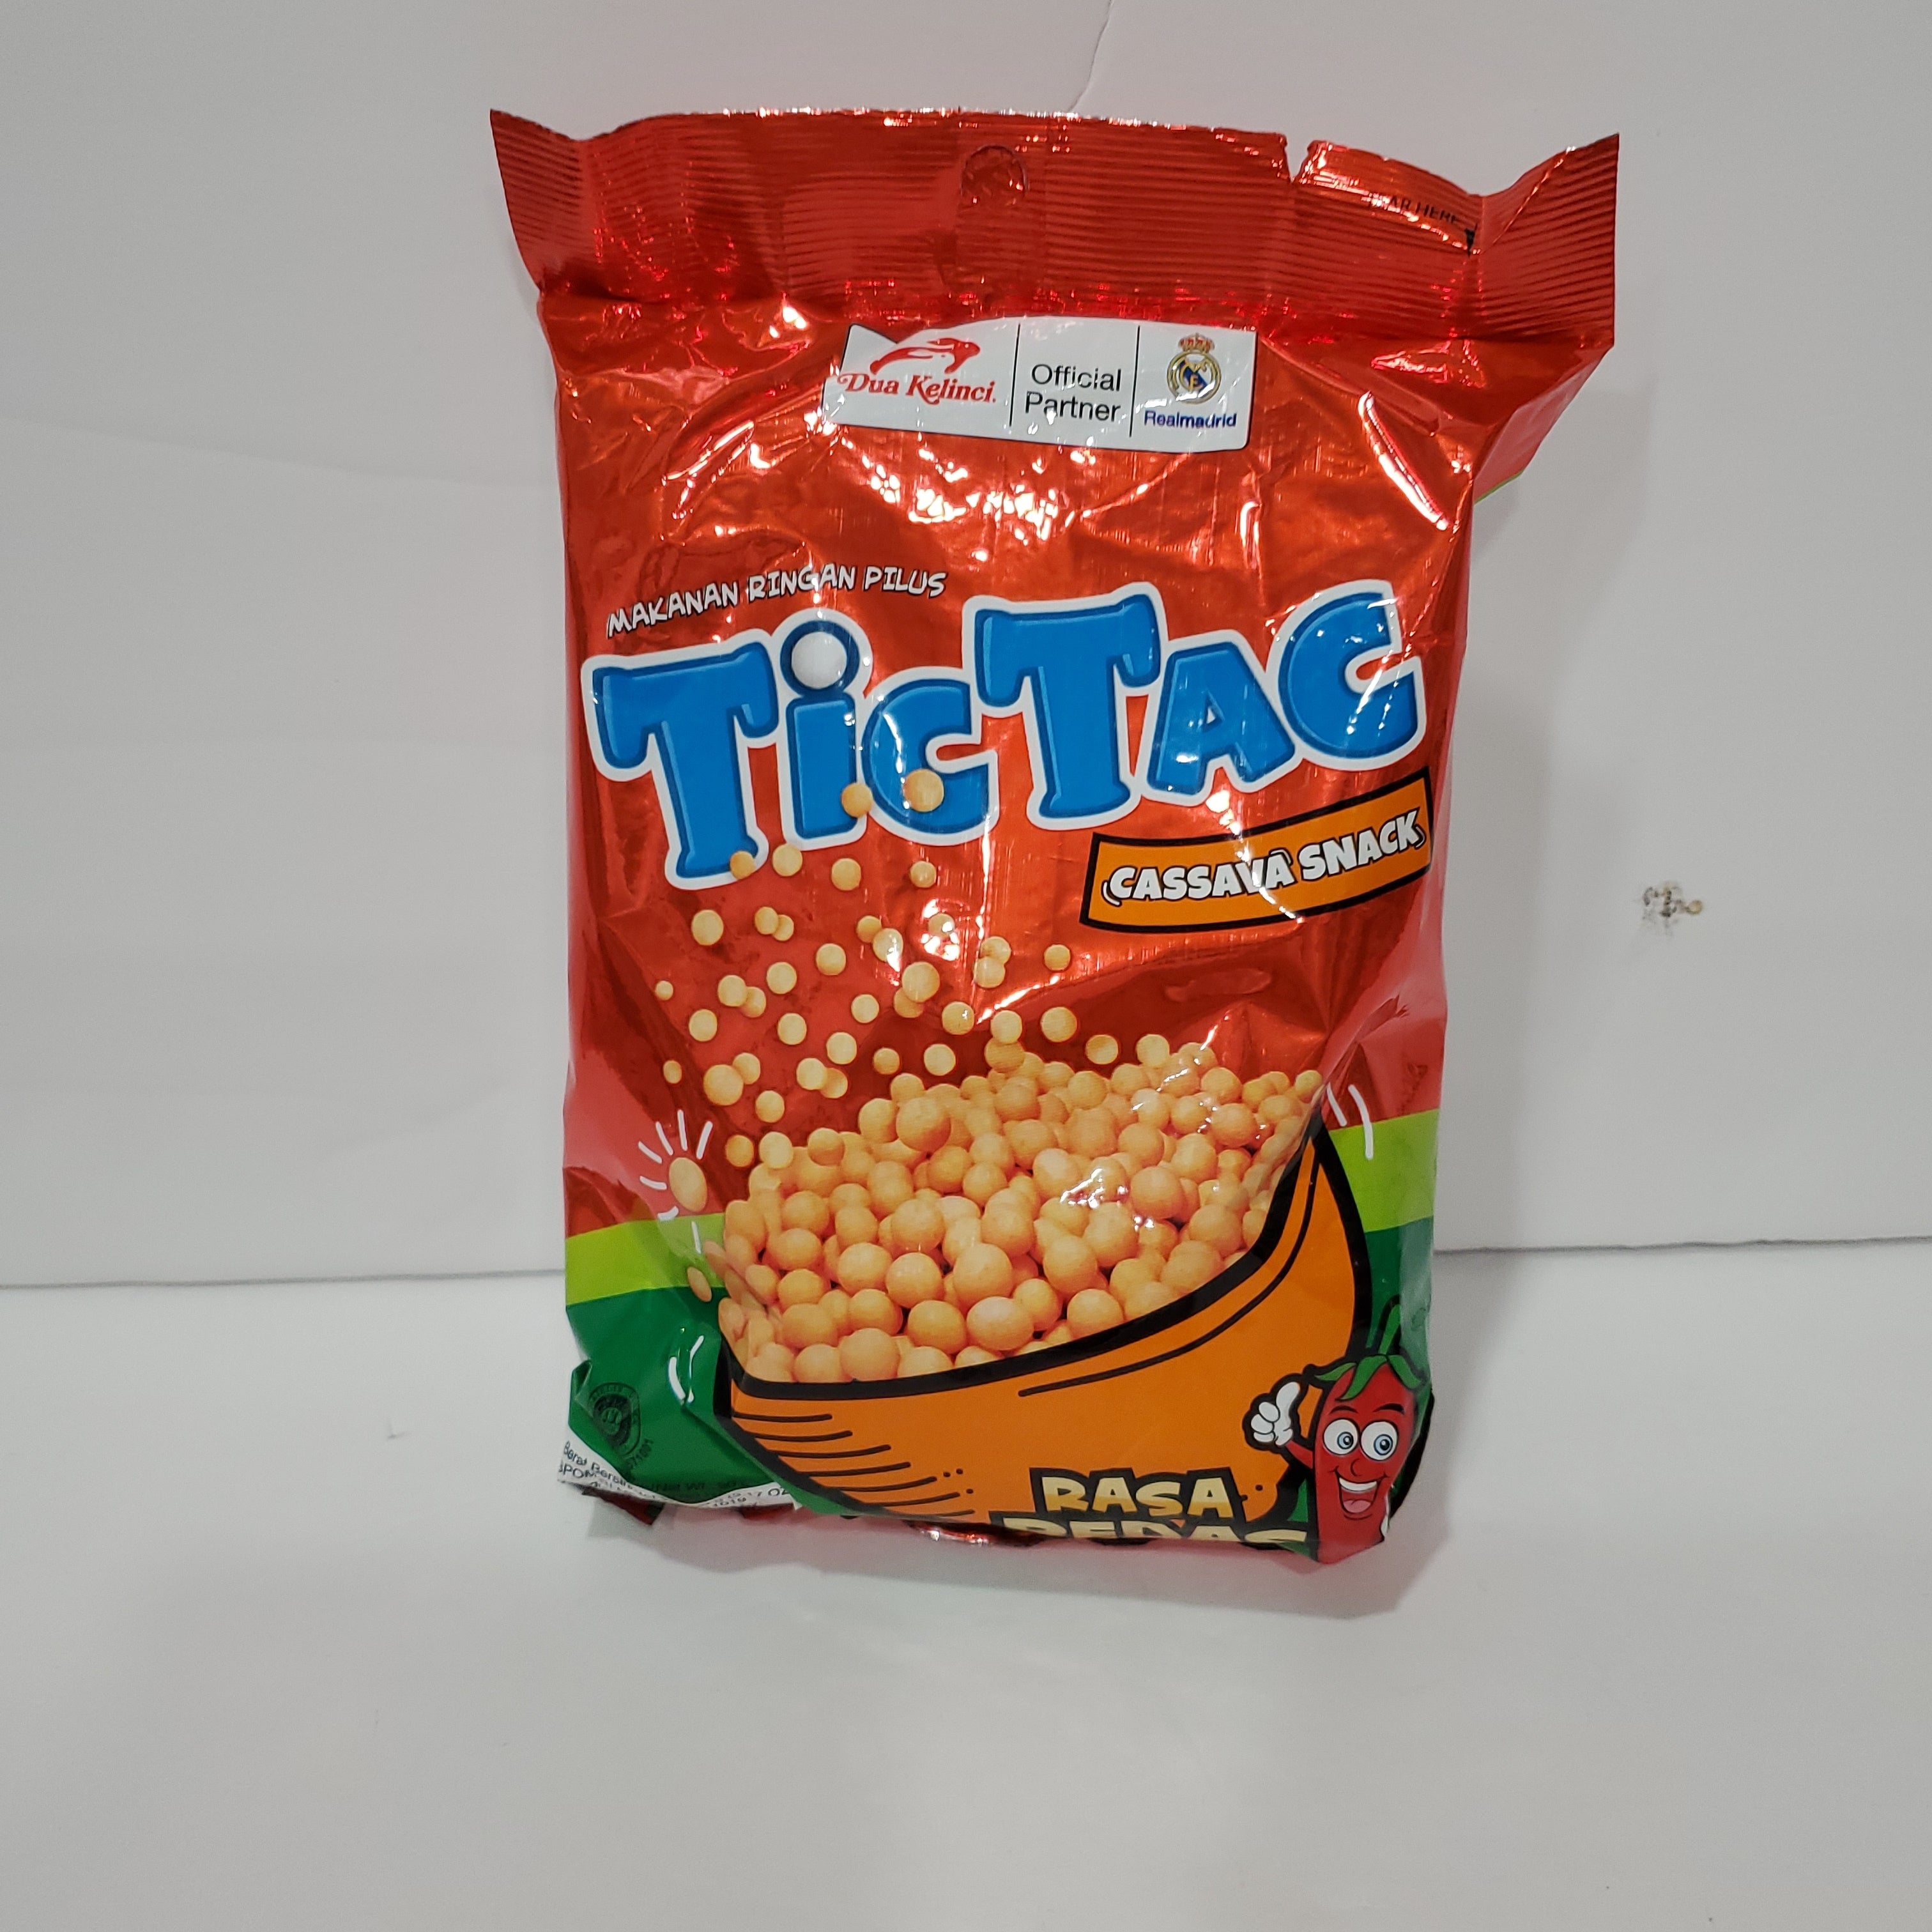 TicTac cassava spicy snack